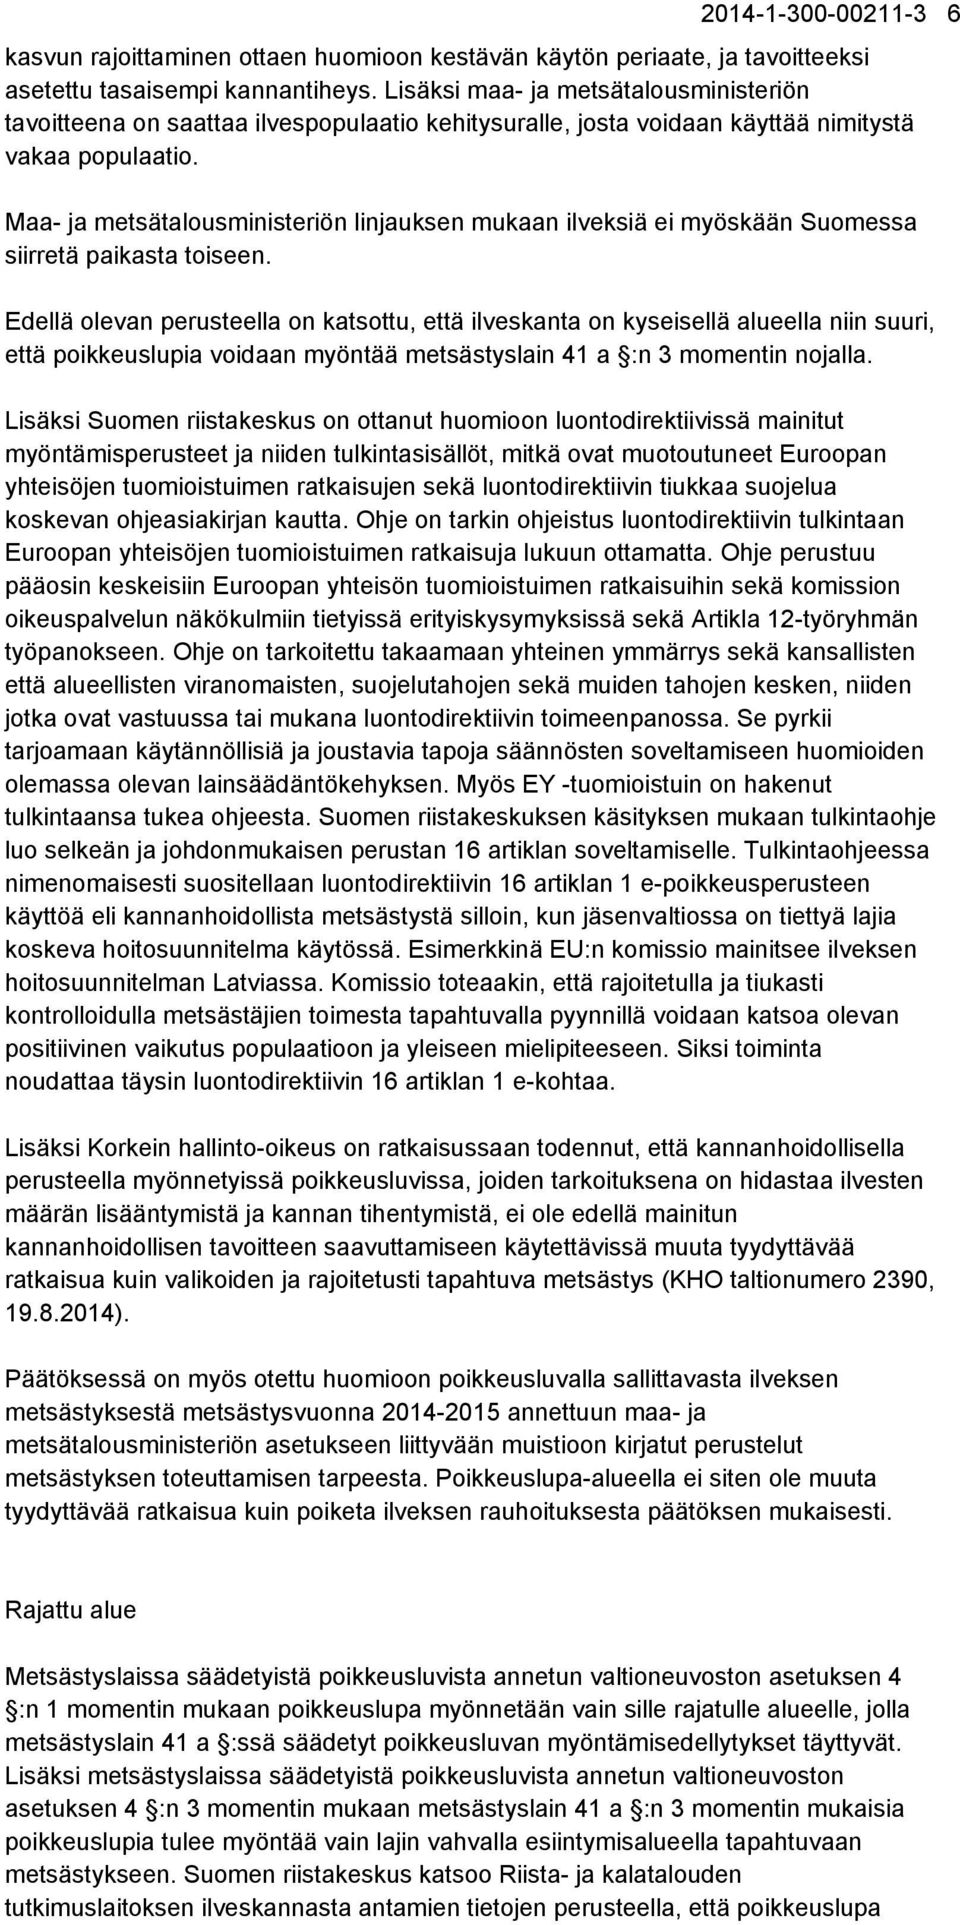 Maa- ja metsätalousministeriön linjauksen mukaan ilveksiä ei myöskään Suomessa siirretä paikasta toiseen.